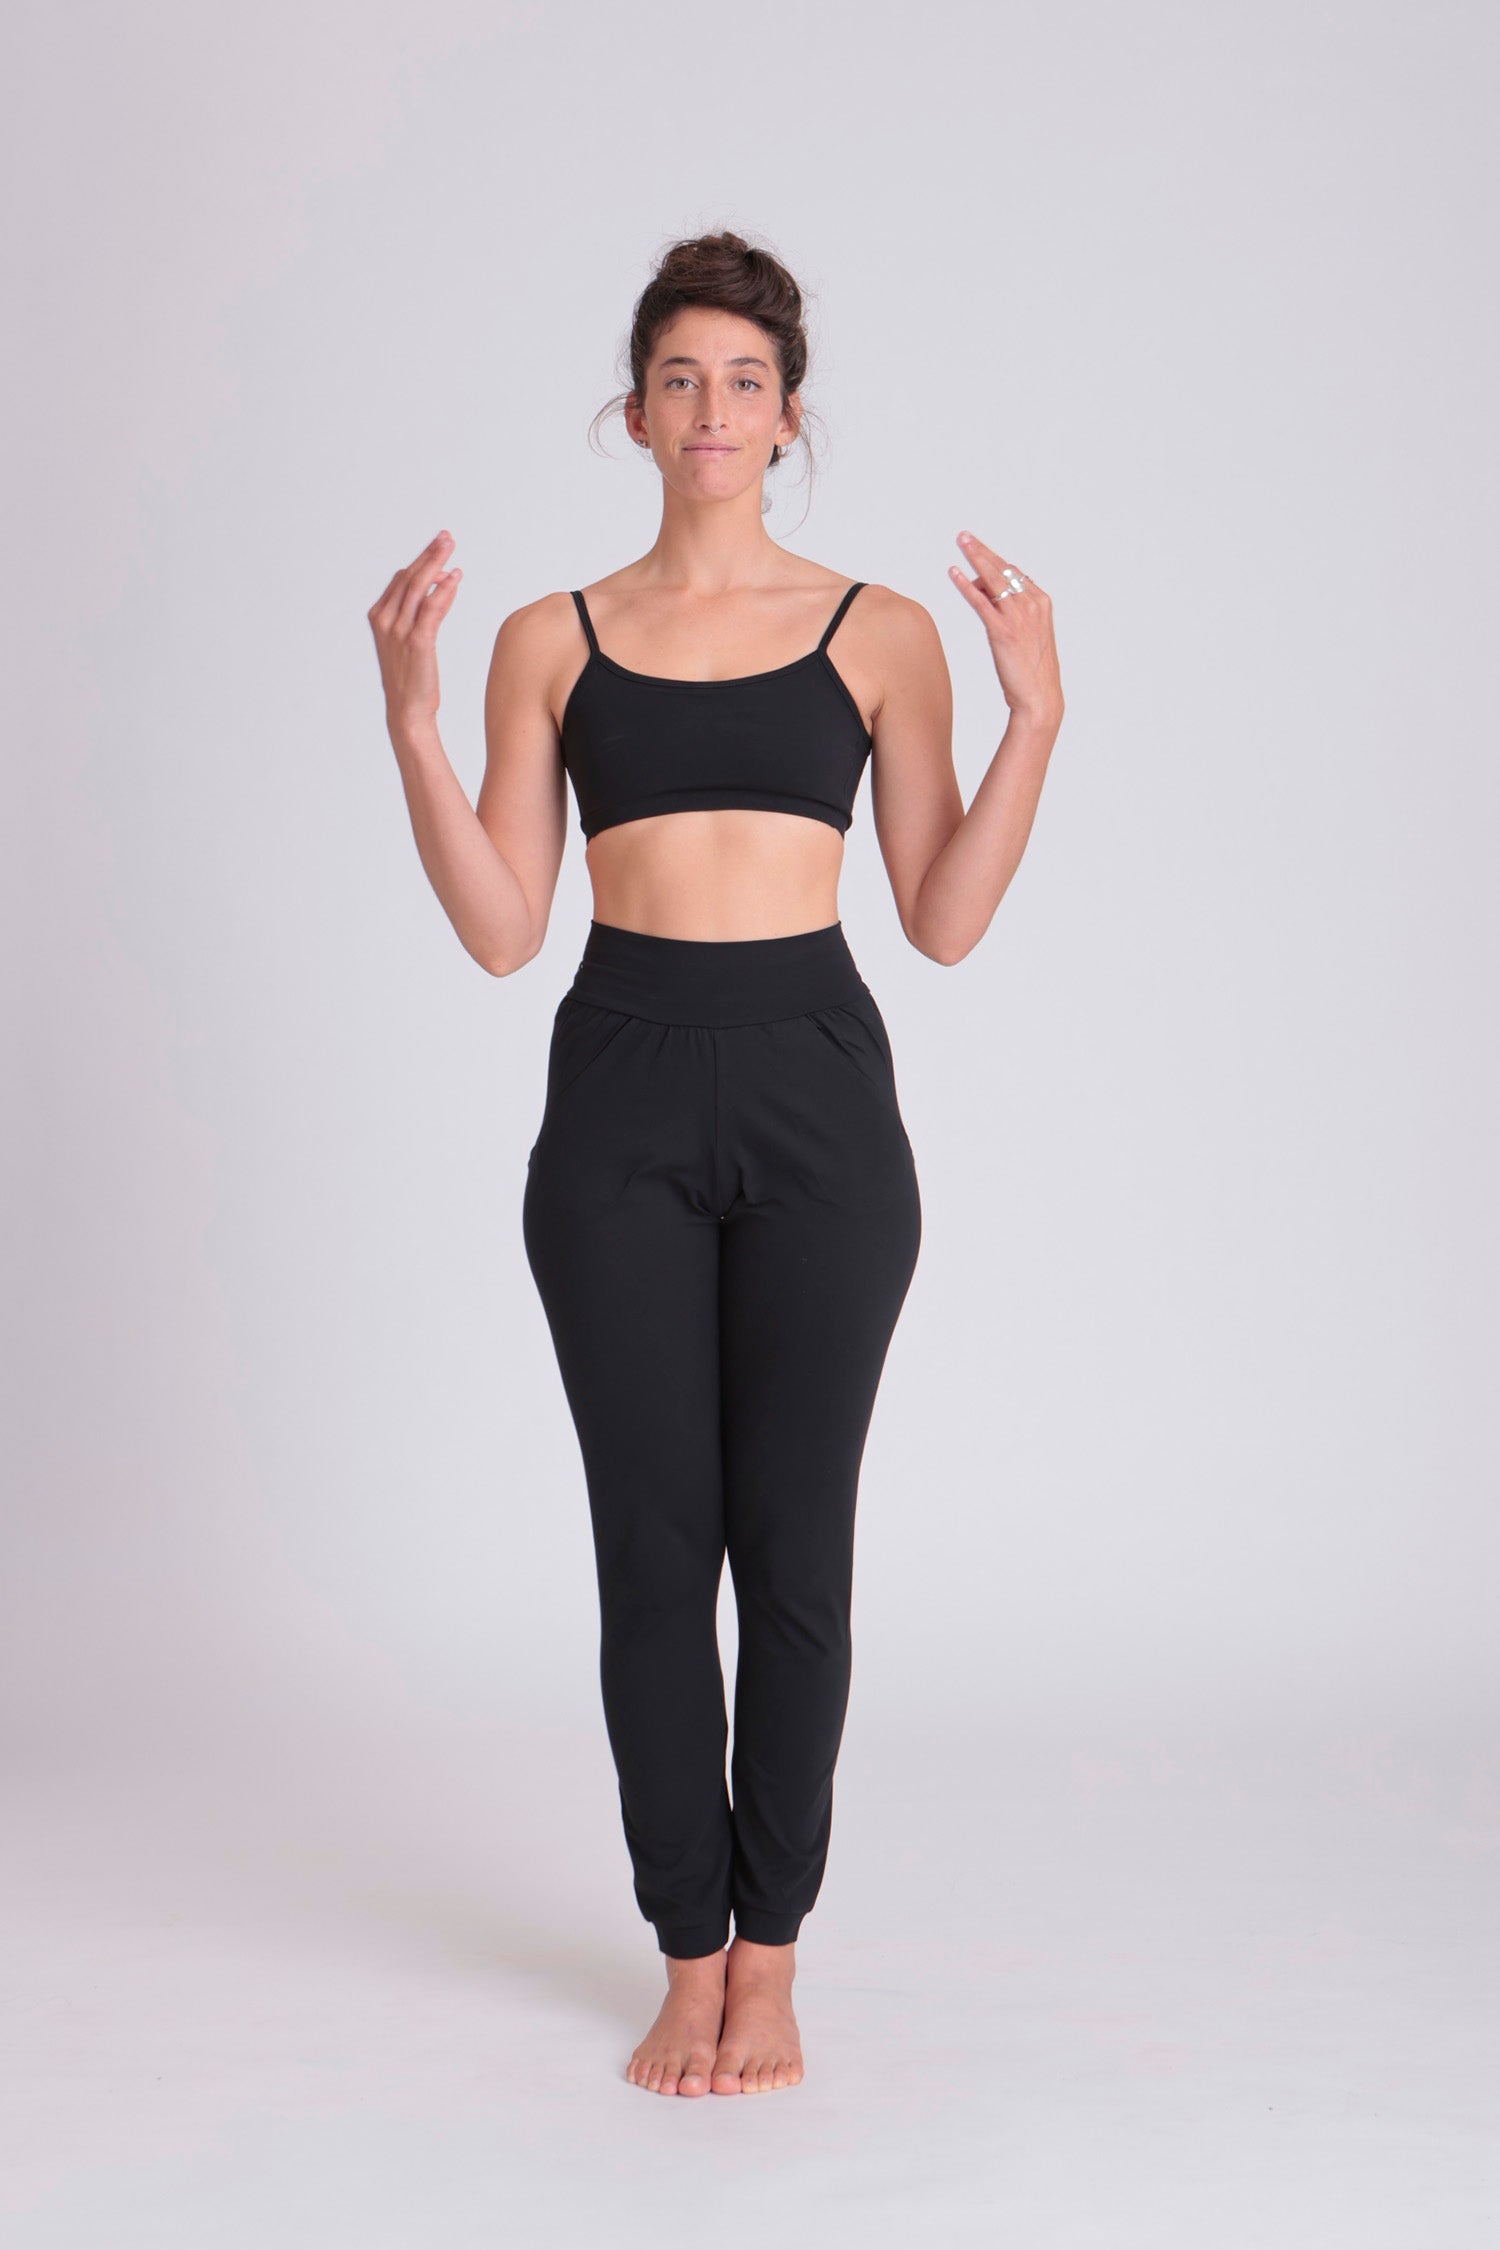 Jahrioiu 100% Cotton Yoga Pants Women Petite Top Leggings Yoga Athletic  Workout Pants Women Fitness Crop Sport Camouflage Pants : :  Clothing, Shoes & Accessories